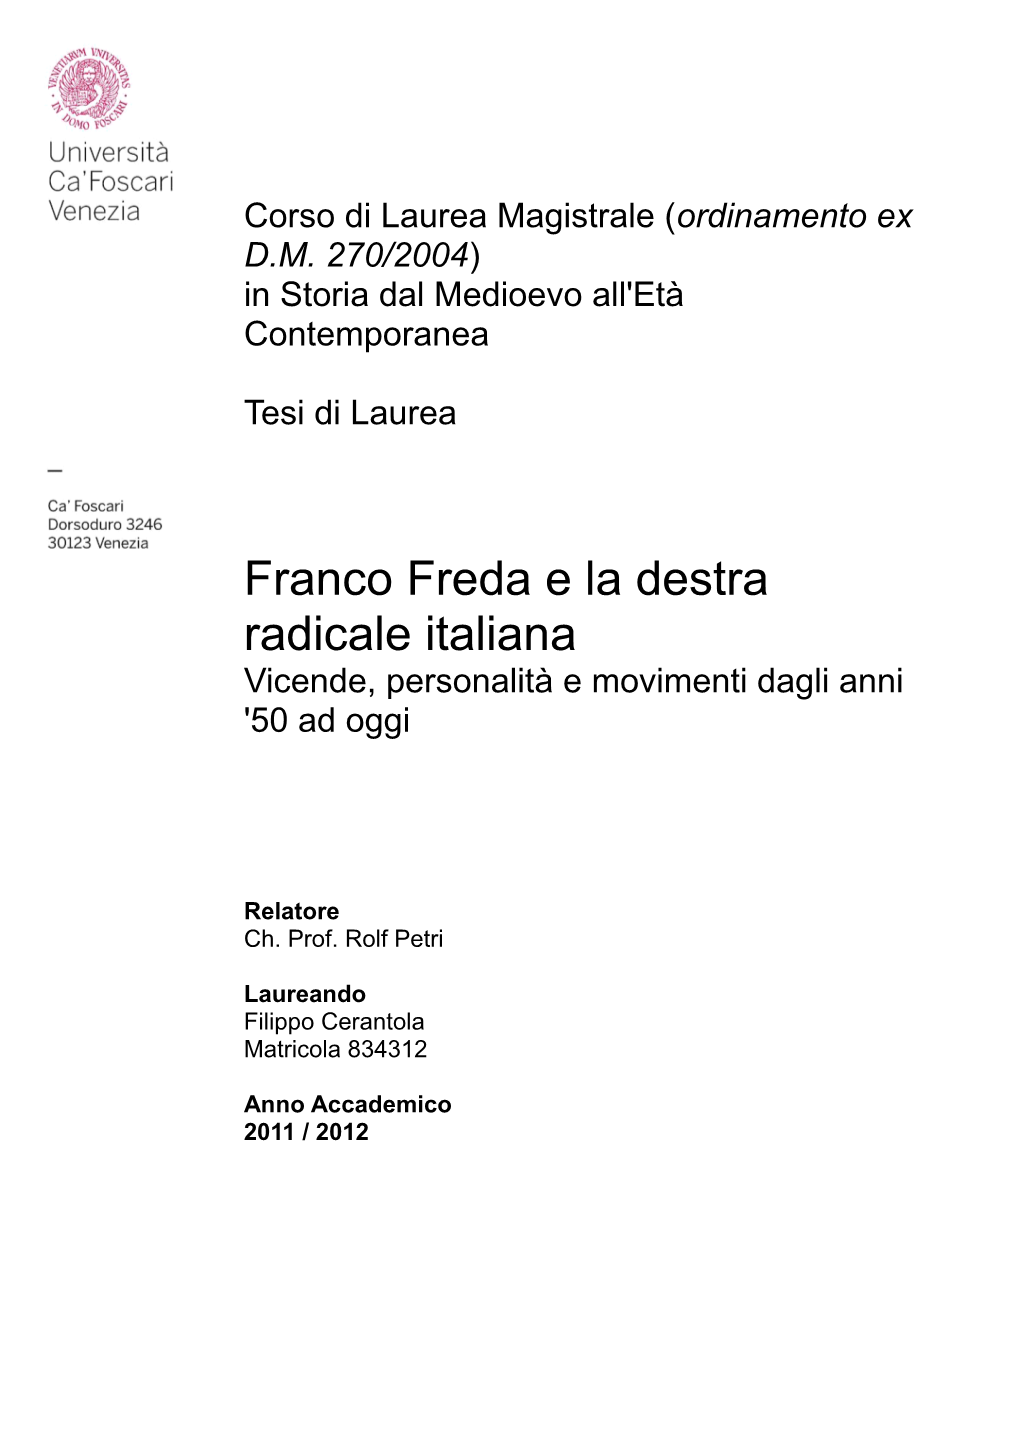 Franco Freda E La Destra Radicale Italiana Vicende, Personalità E Movimenti Dagli Anni '50 Ad Oggi